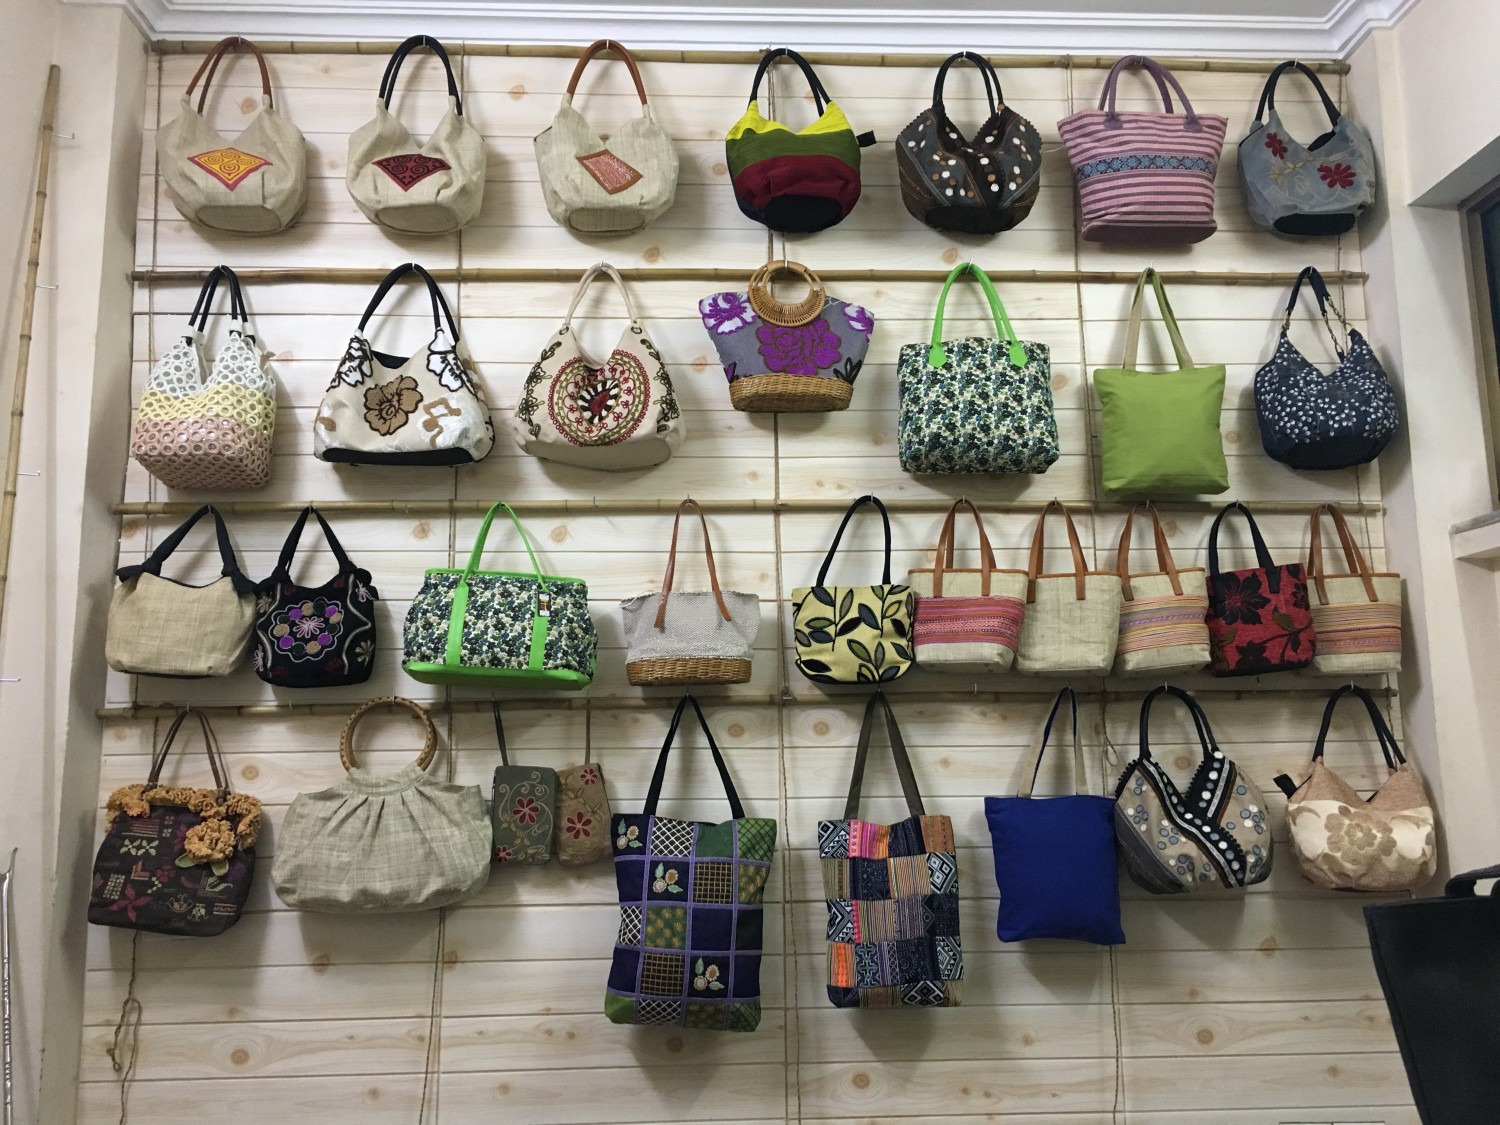 Top 5 Local Brands of Popular Handbags in Vietnam